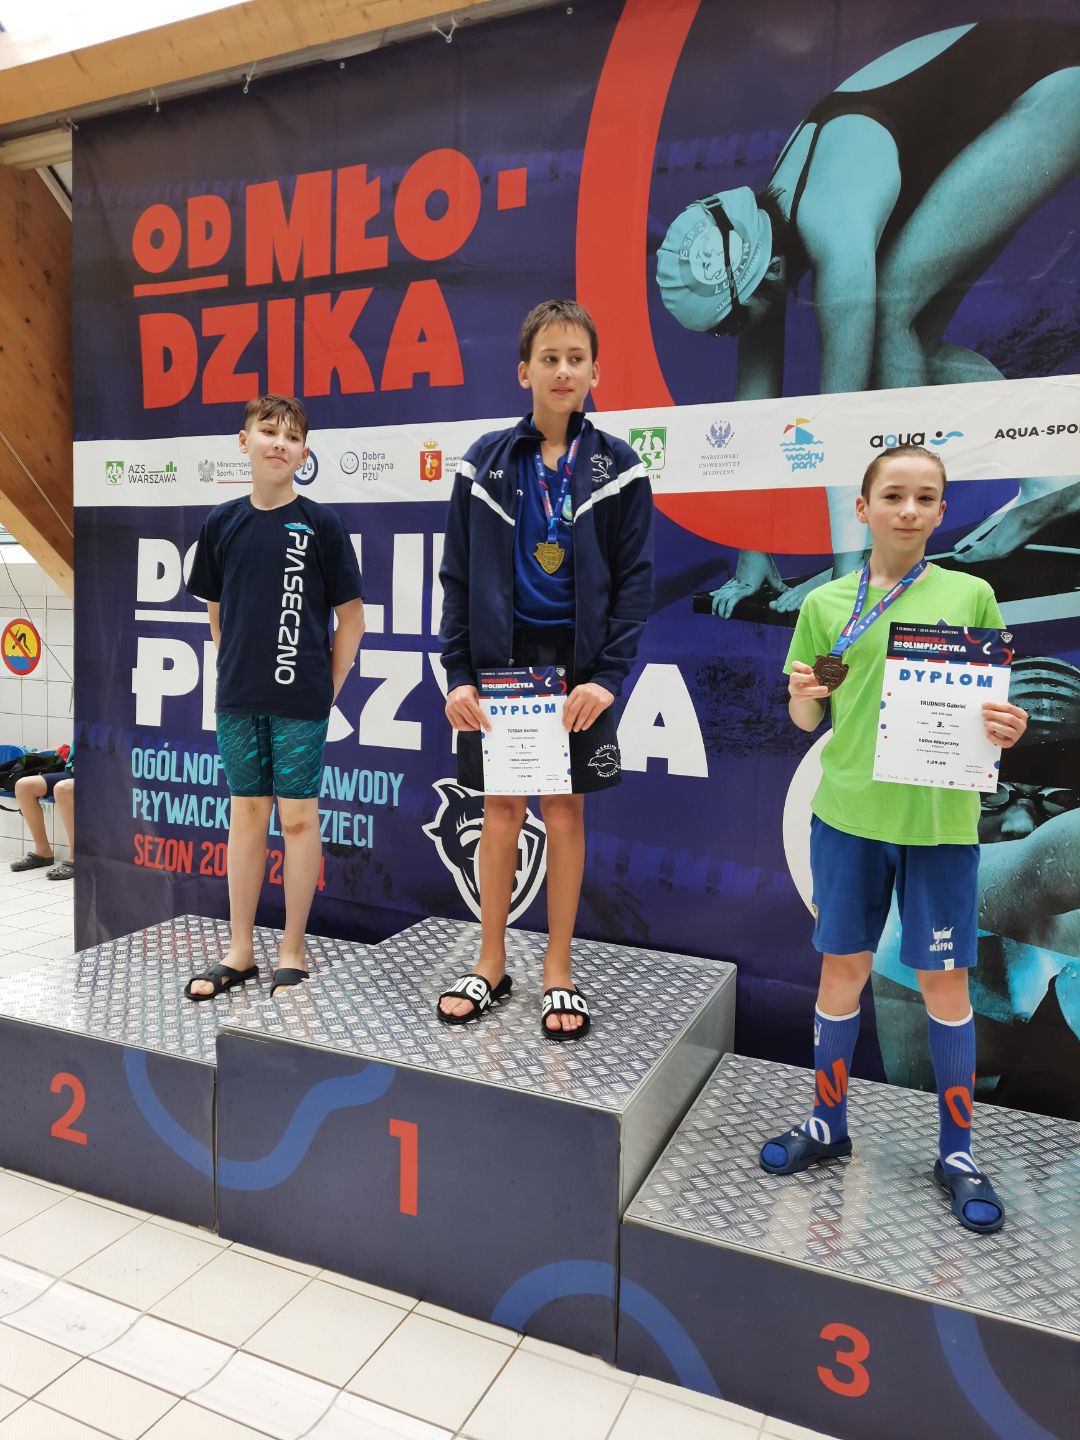 9 medali i 3 miejsce w klasyfikacji medalowej UKS Delfin Tarnobrzeg w Ogólnopolskich zawodach „Od Młodzika do Olimpijczyka”